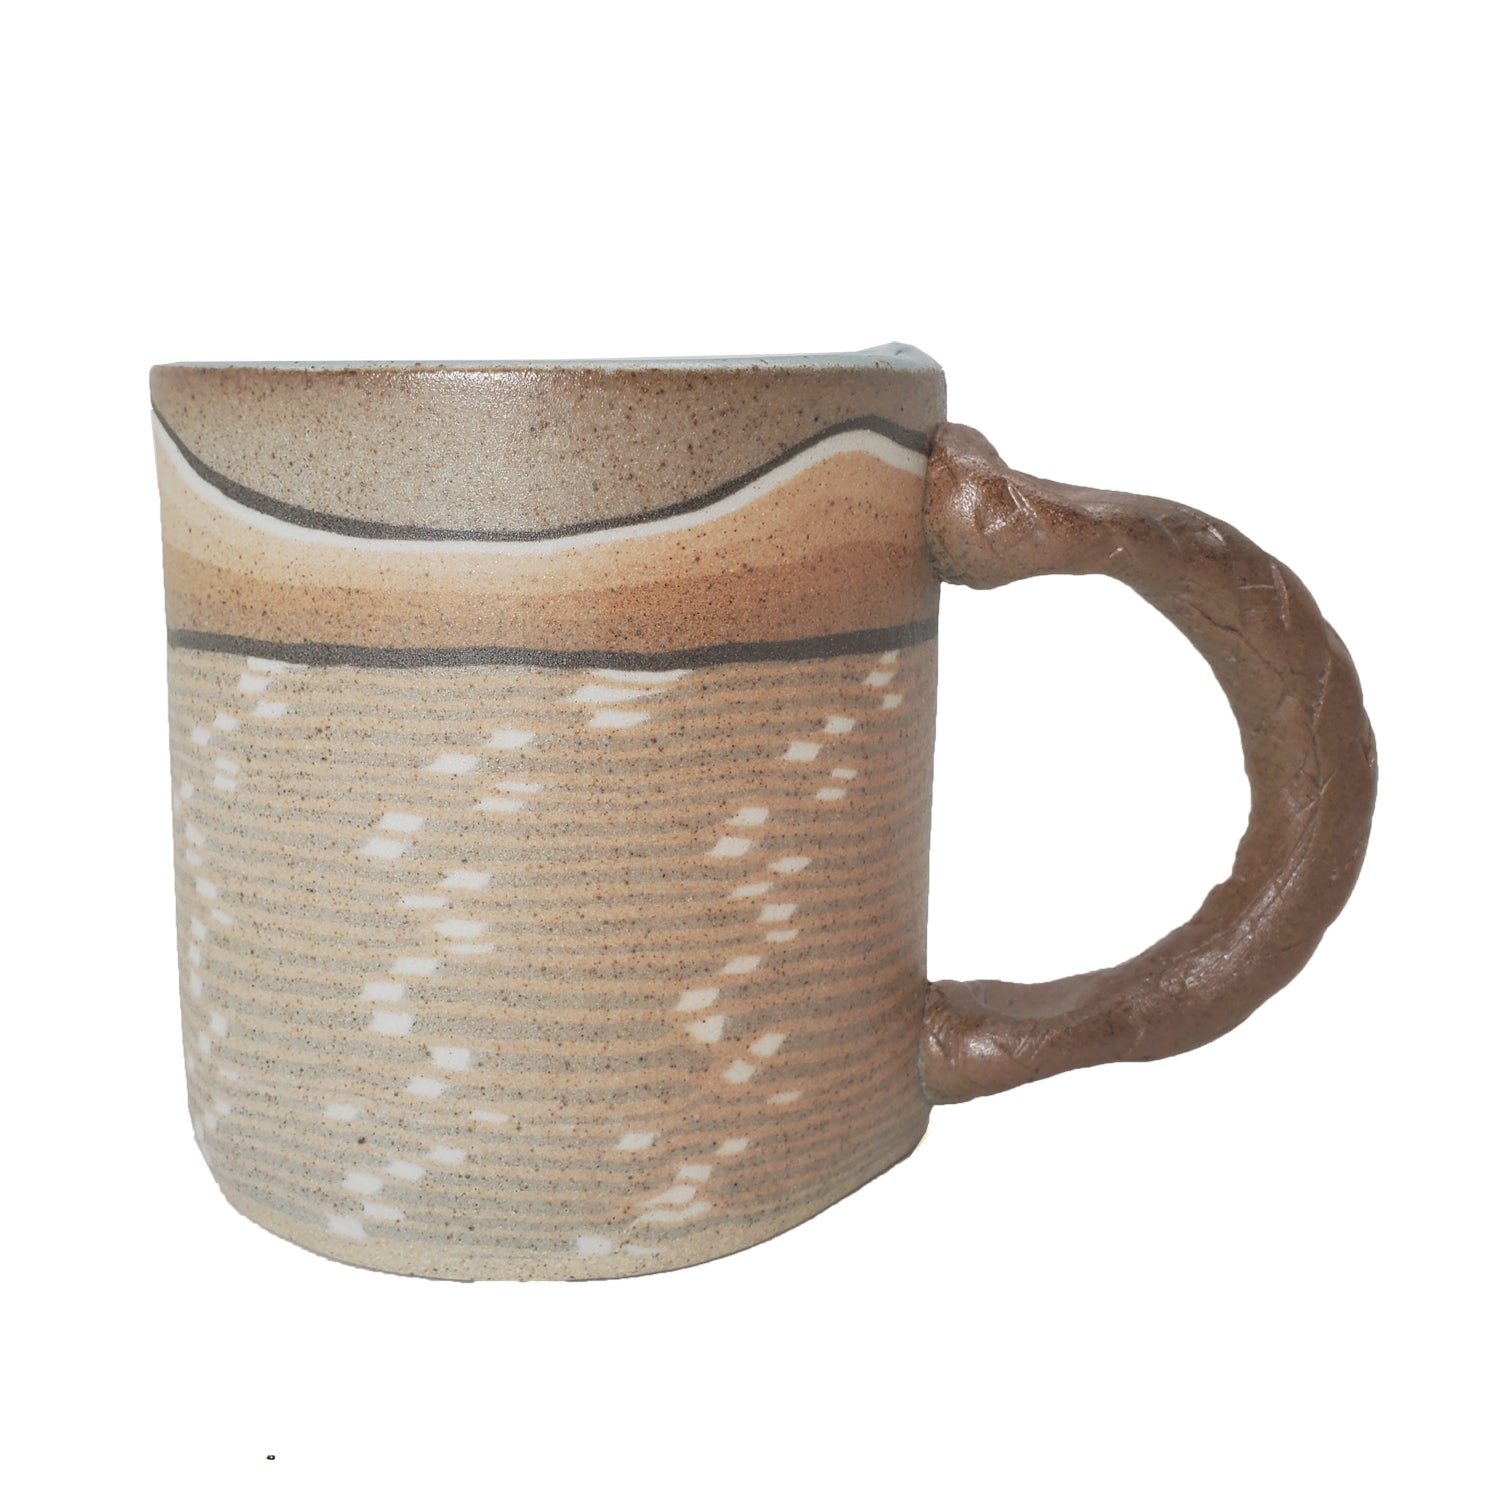 Mug, Teacup, or Demitassee - Landscape